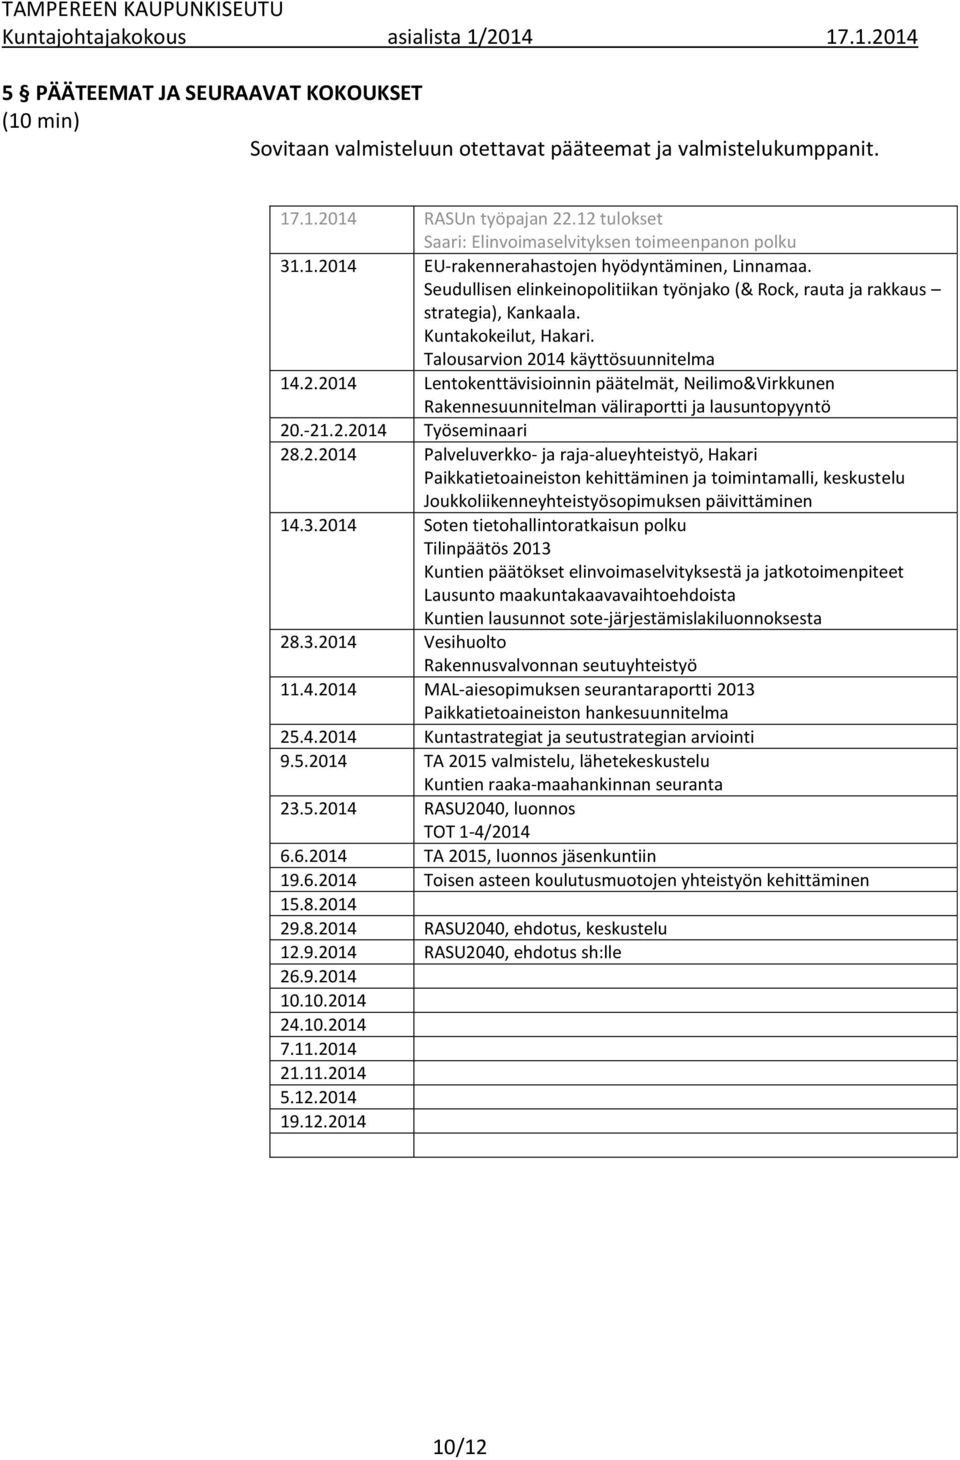 Talousarvion 2014 käyttösuunnitelma 14.2.2014 Lentokenttävisioinnin päätelmät, Neilimo&Virkkunen Rakennesuunnitelman väliraportti ja lausuntopyyntö 20.-21.2.2014 Työseminaari 28.2.2014 Palveluverkko- ja raja-alueyhteistyö, Hakari Paikkatietoaineiston kehittäminen ja toimintamalli, keskustelu Joukkoliikenneyhteistyösopimuksen päivittäminen 14.